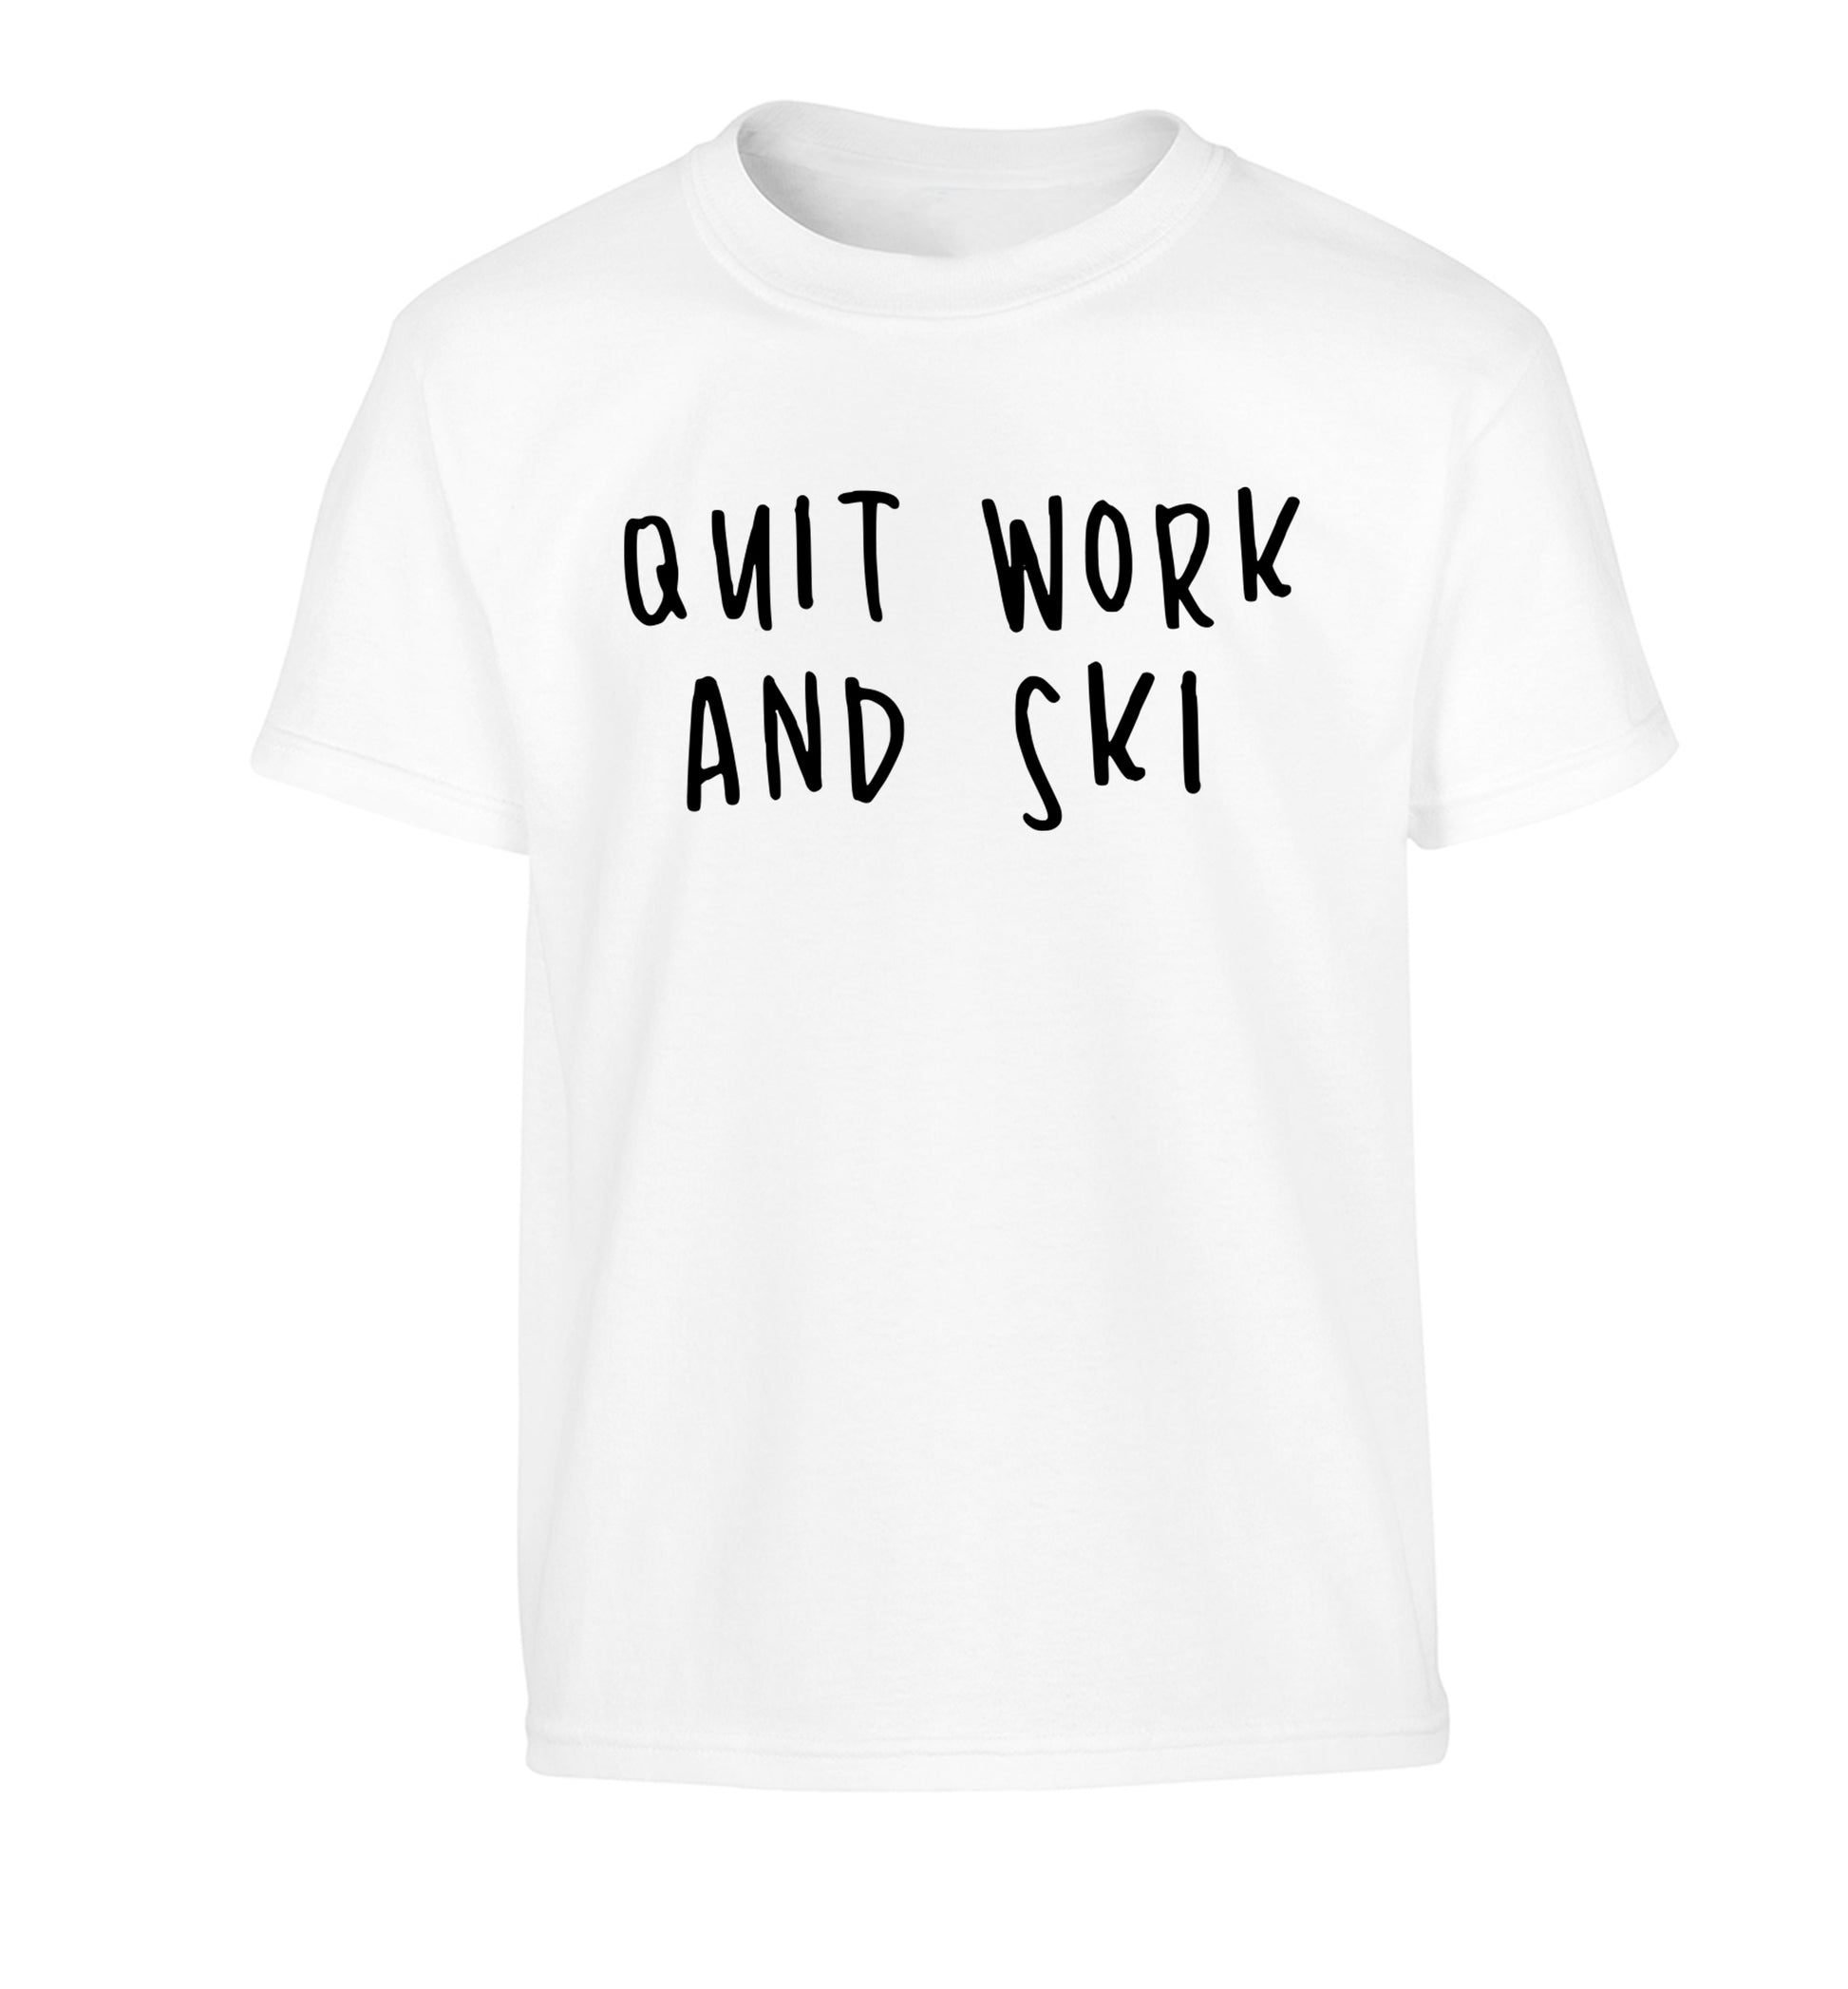 Quit work and ski Children's white Tshirt 12-14 Years